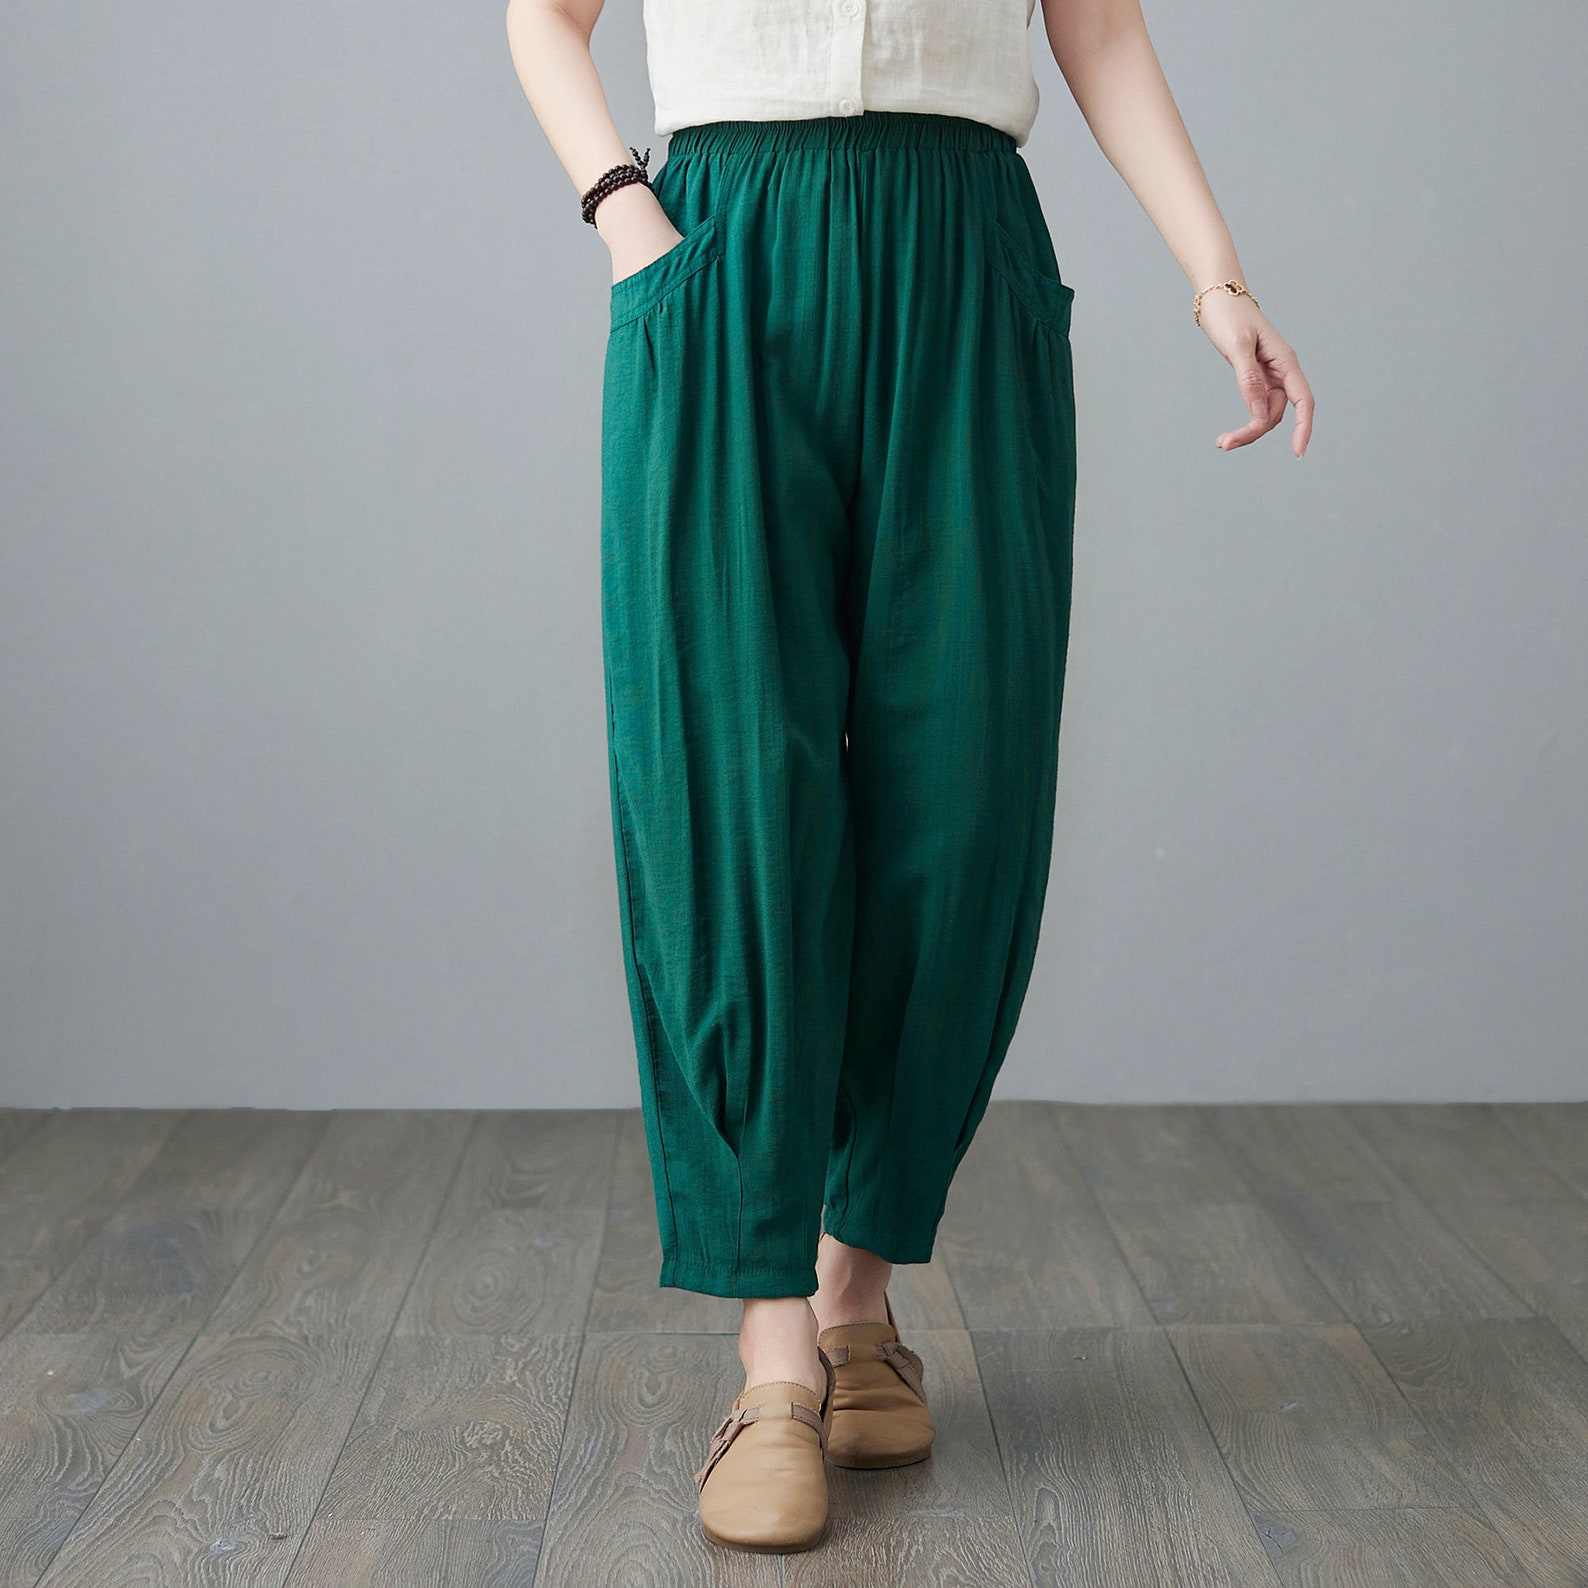 Harem Linen pants Green cropped pants Long linen pants High | Etsy